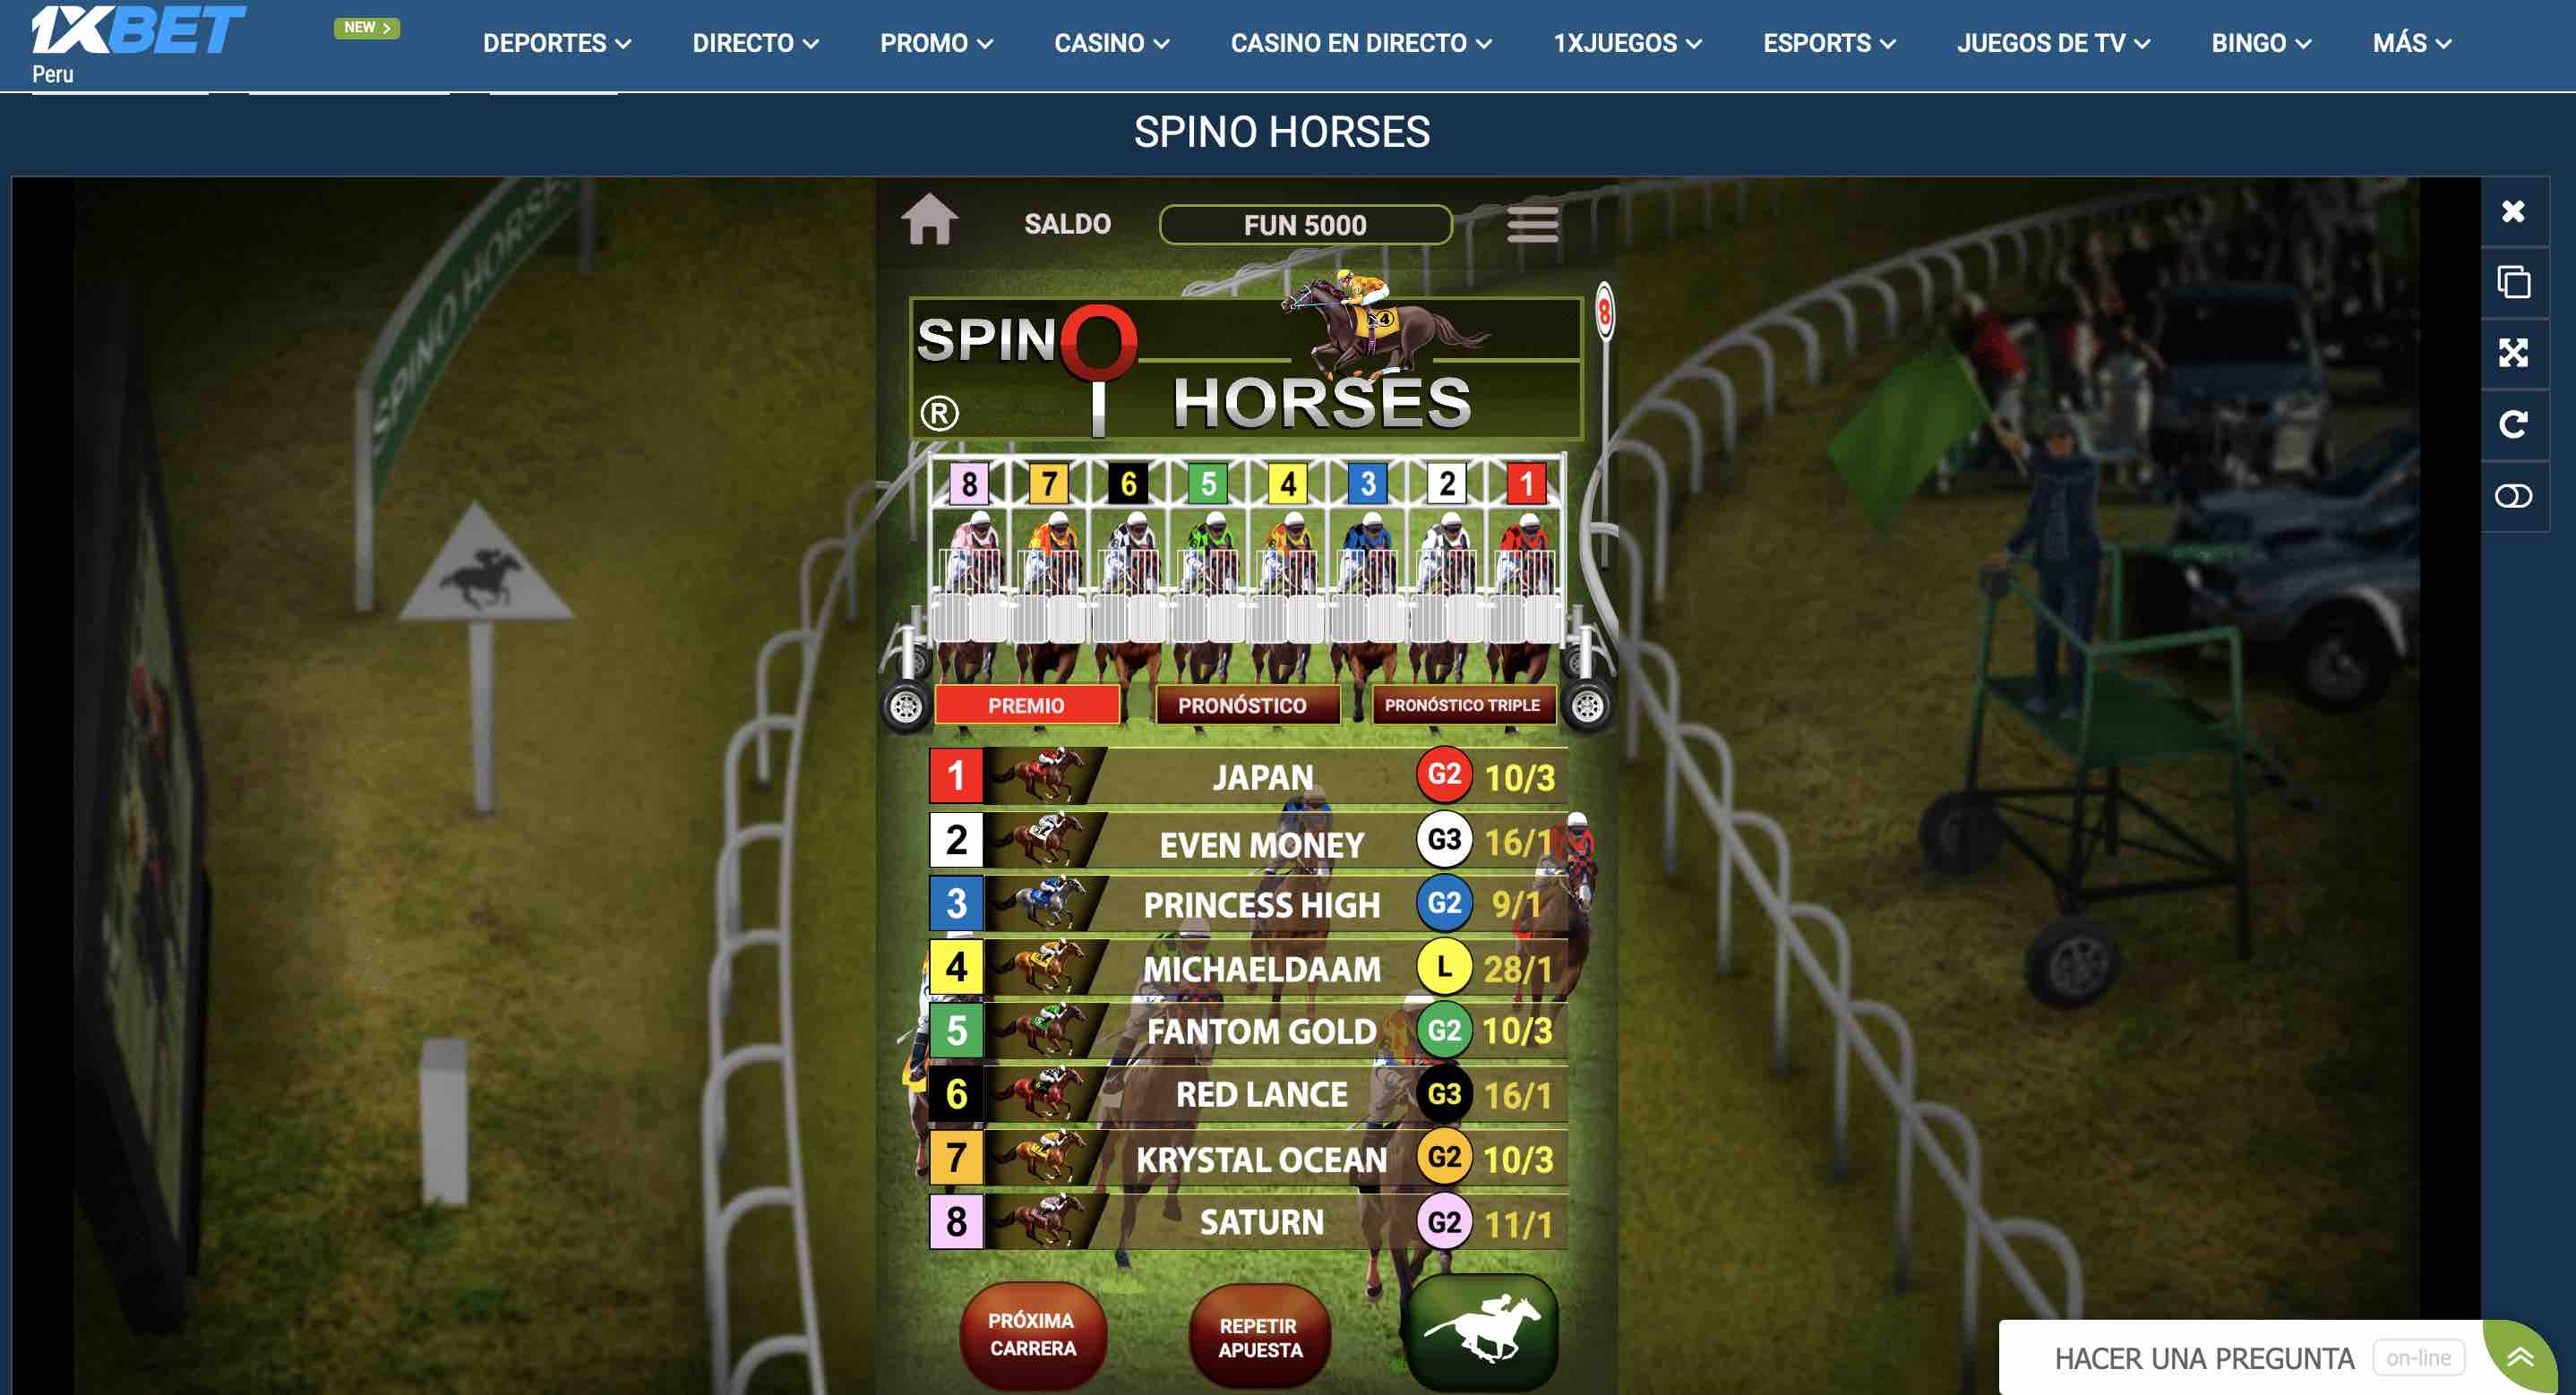 carreras de caballos virtuales en 1xbet